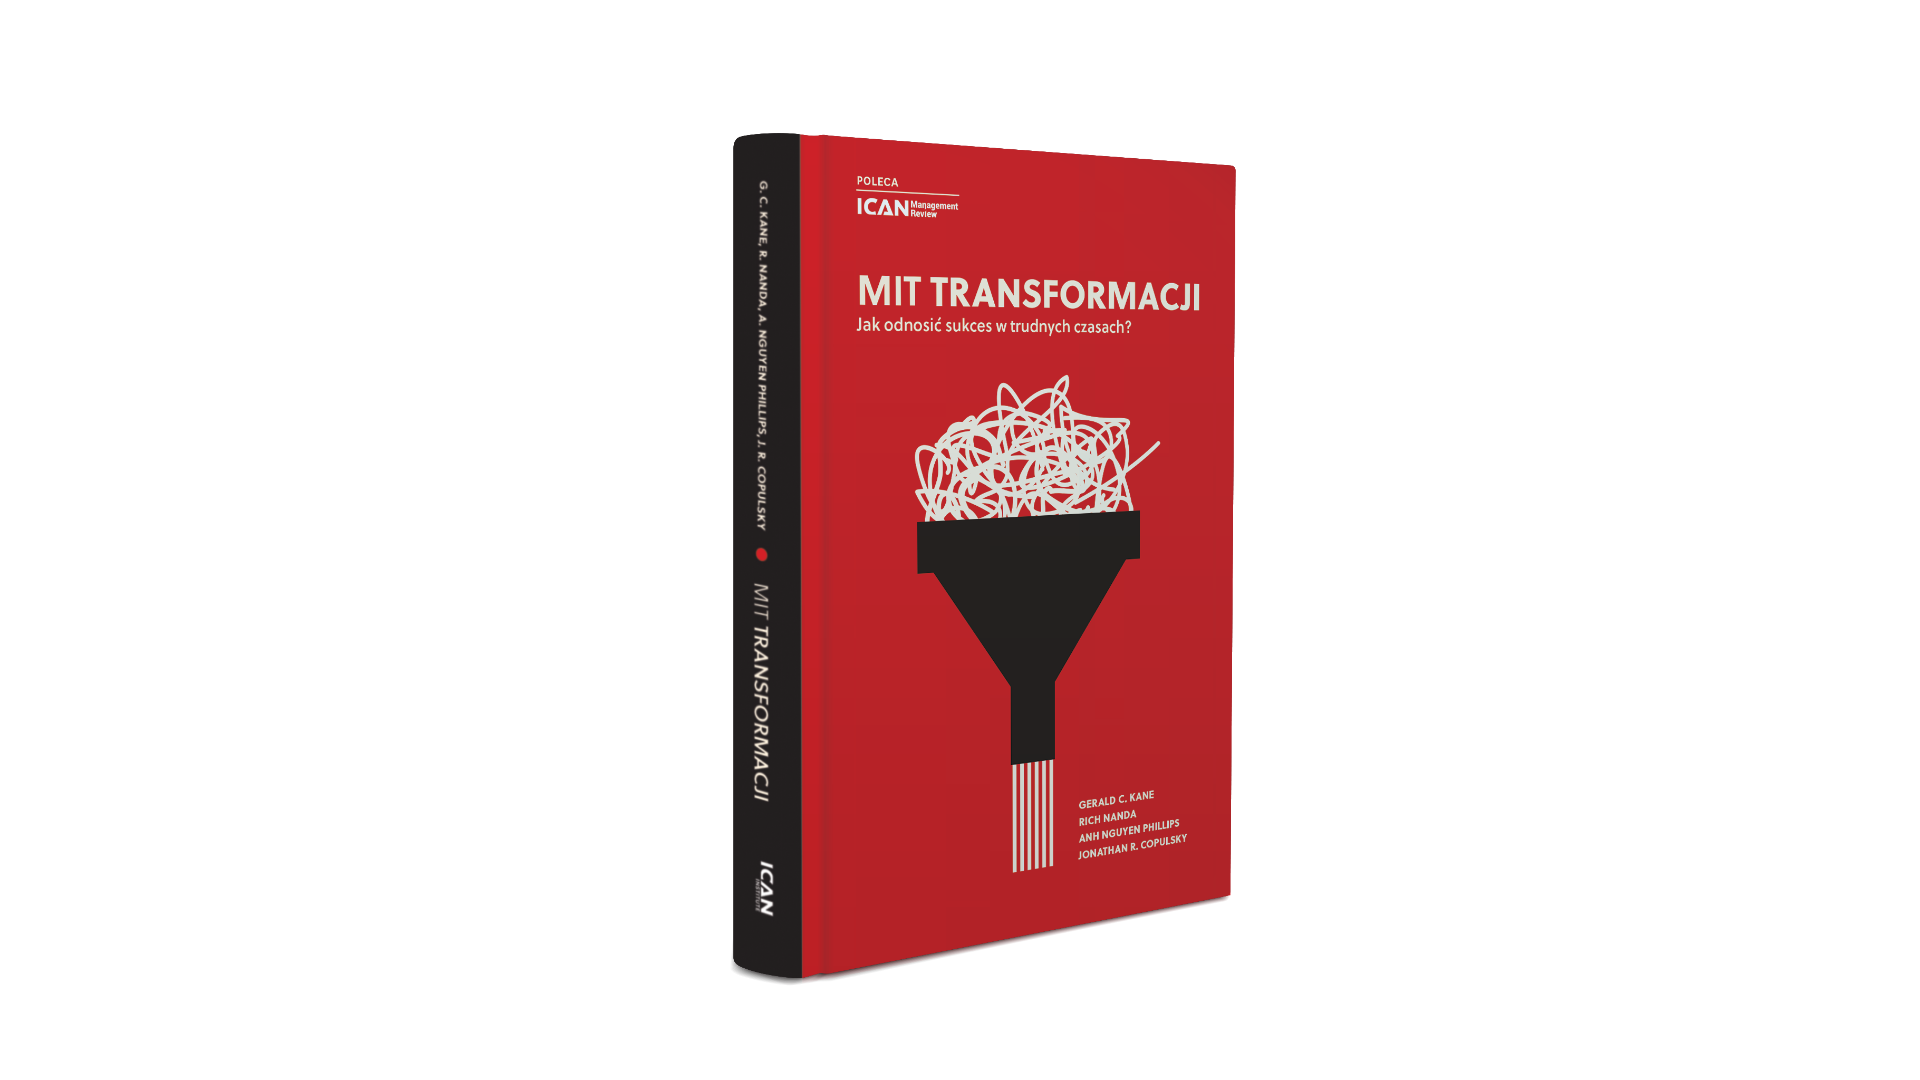 “Mit transformacji. Jak odnosić sukces w trudnych czasach” (ICAN Institute) - recenzja książki